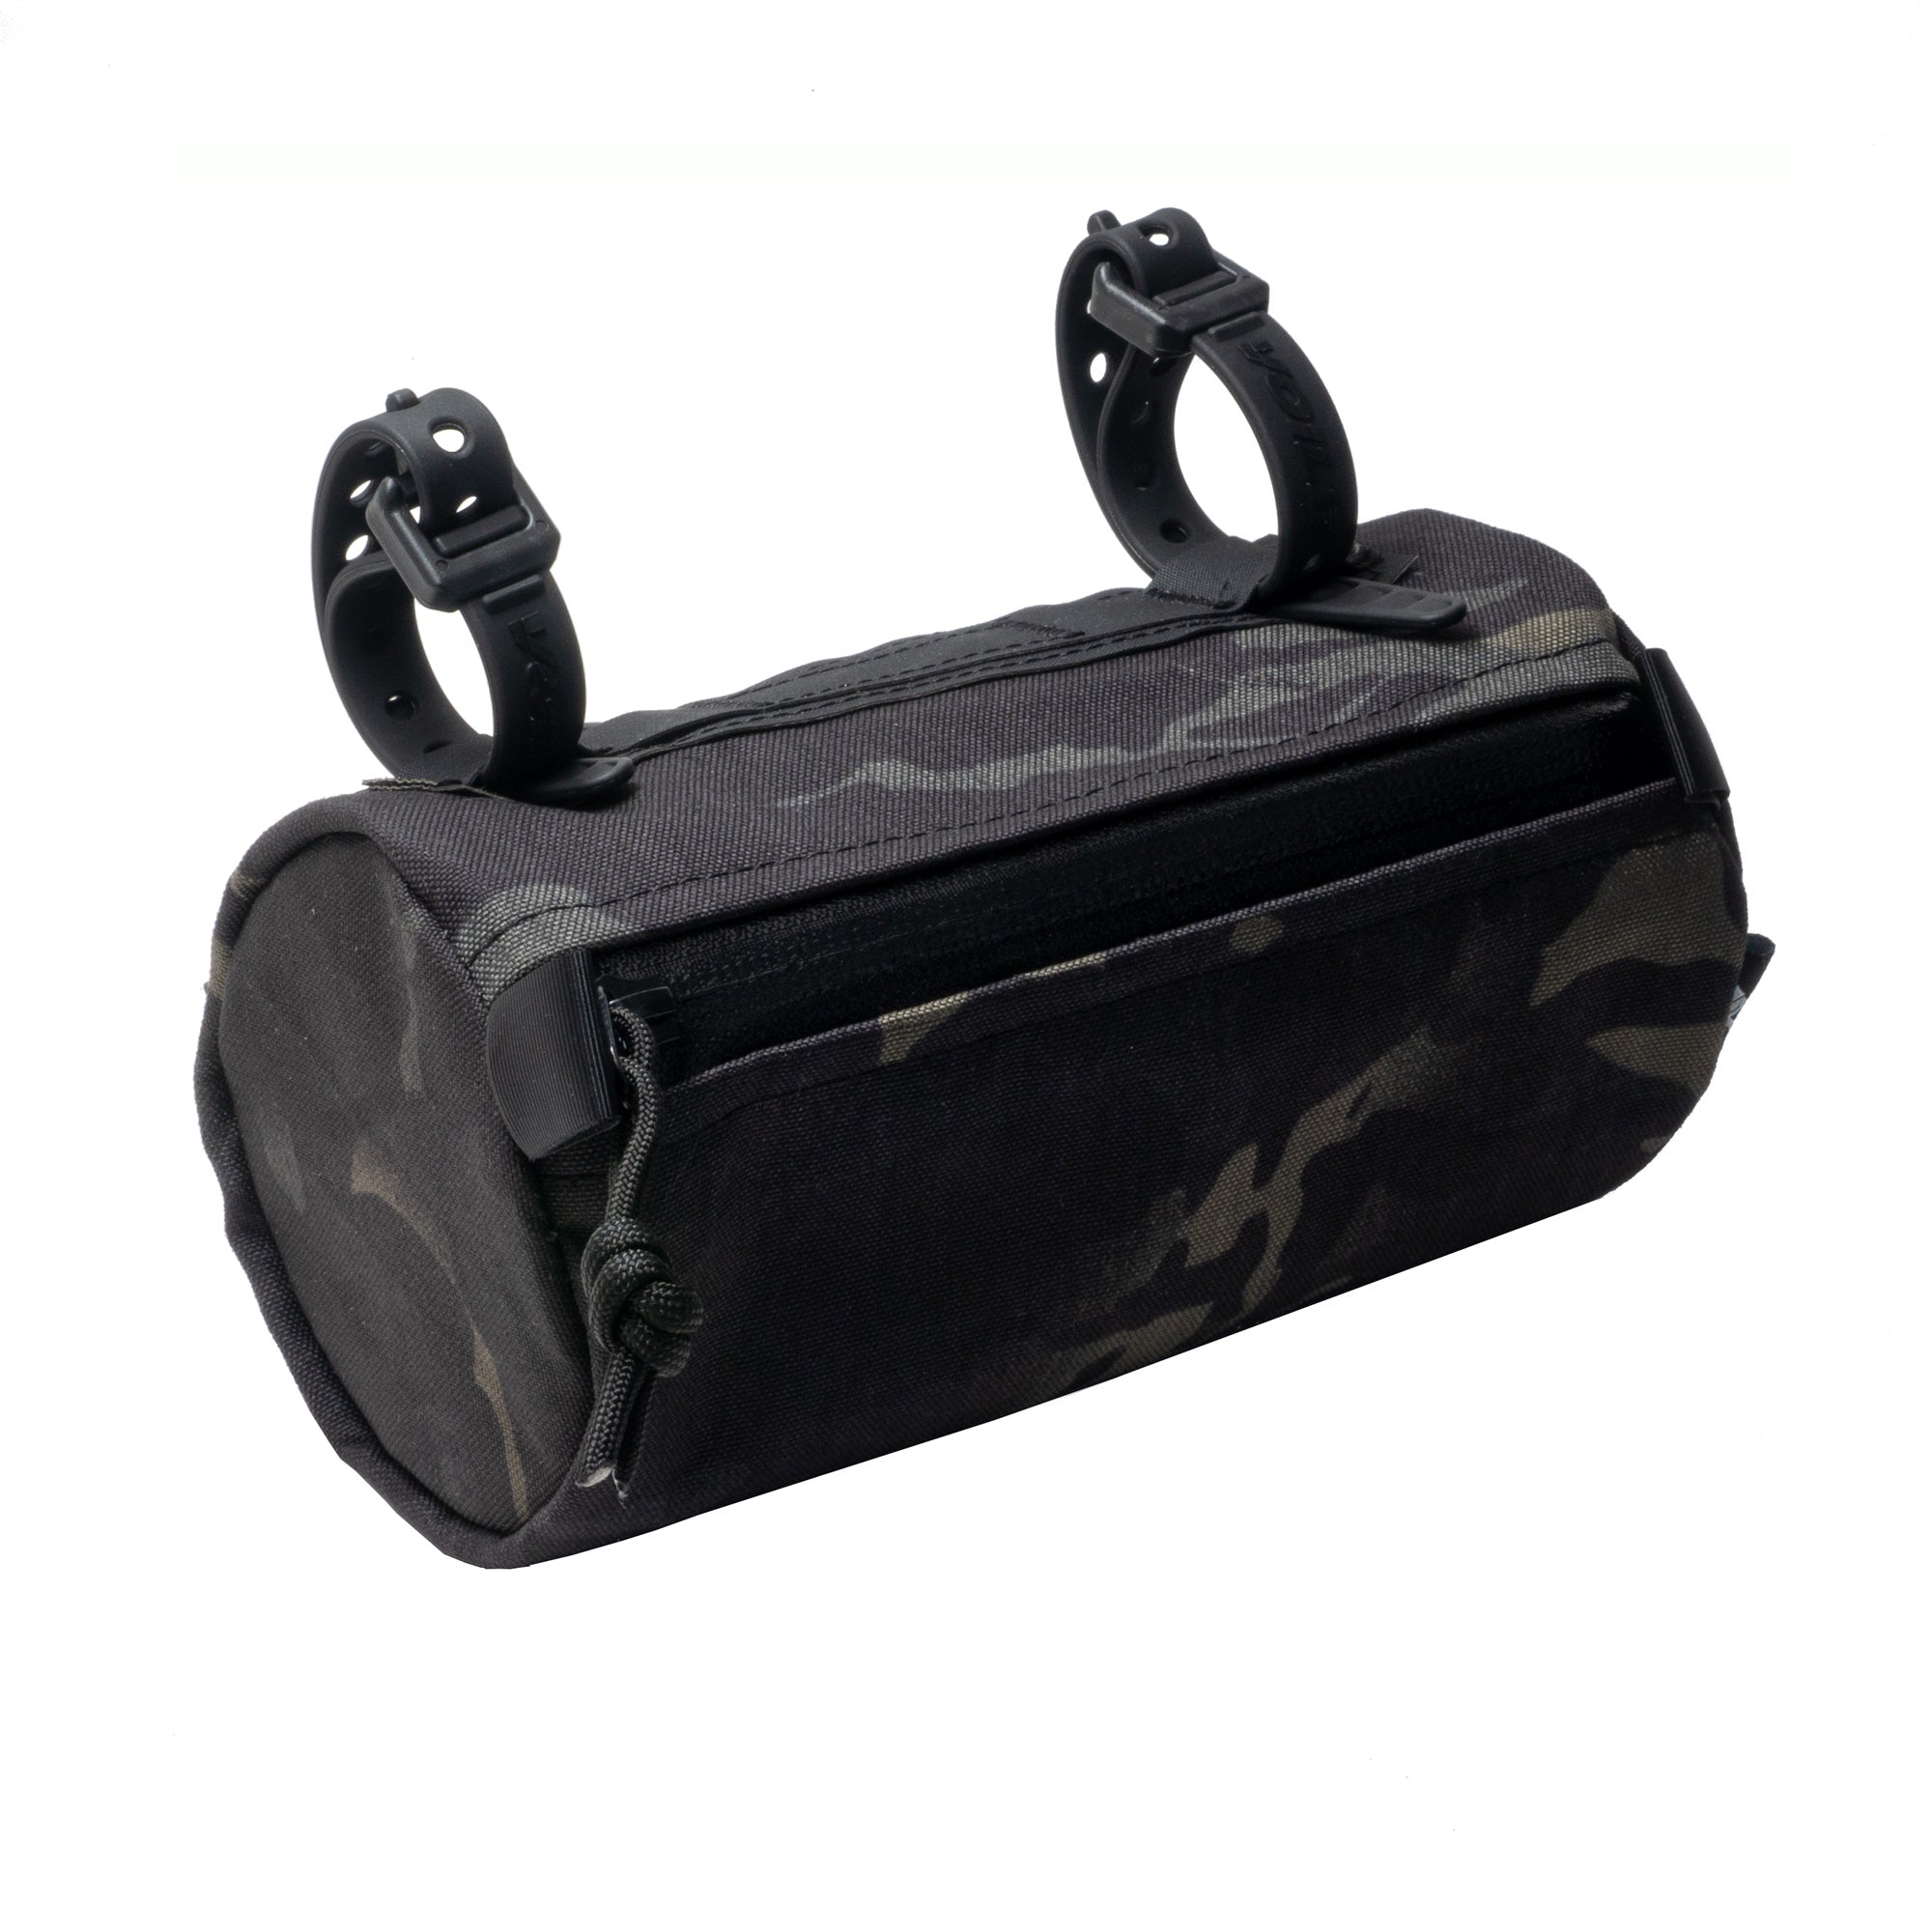 The Smuggler Handlebar Bag Accessories Black Multicam - Orucase